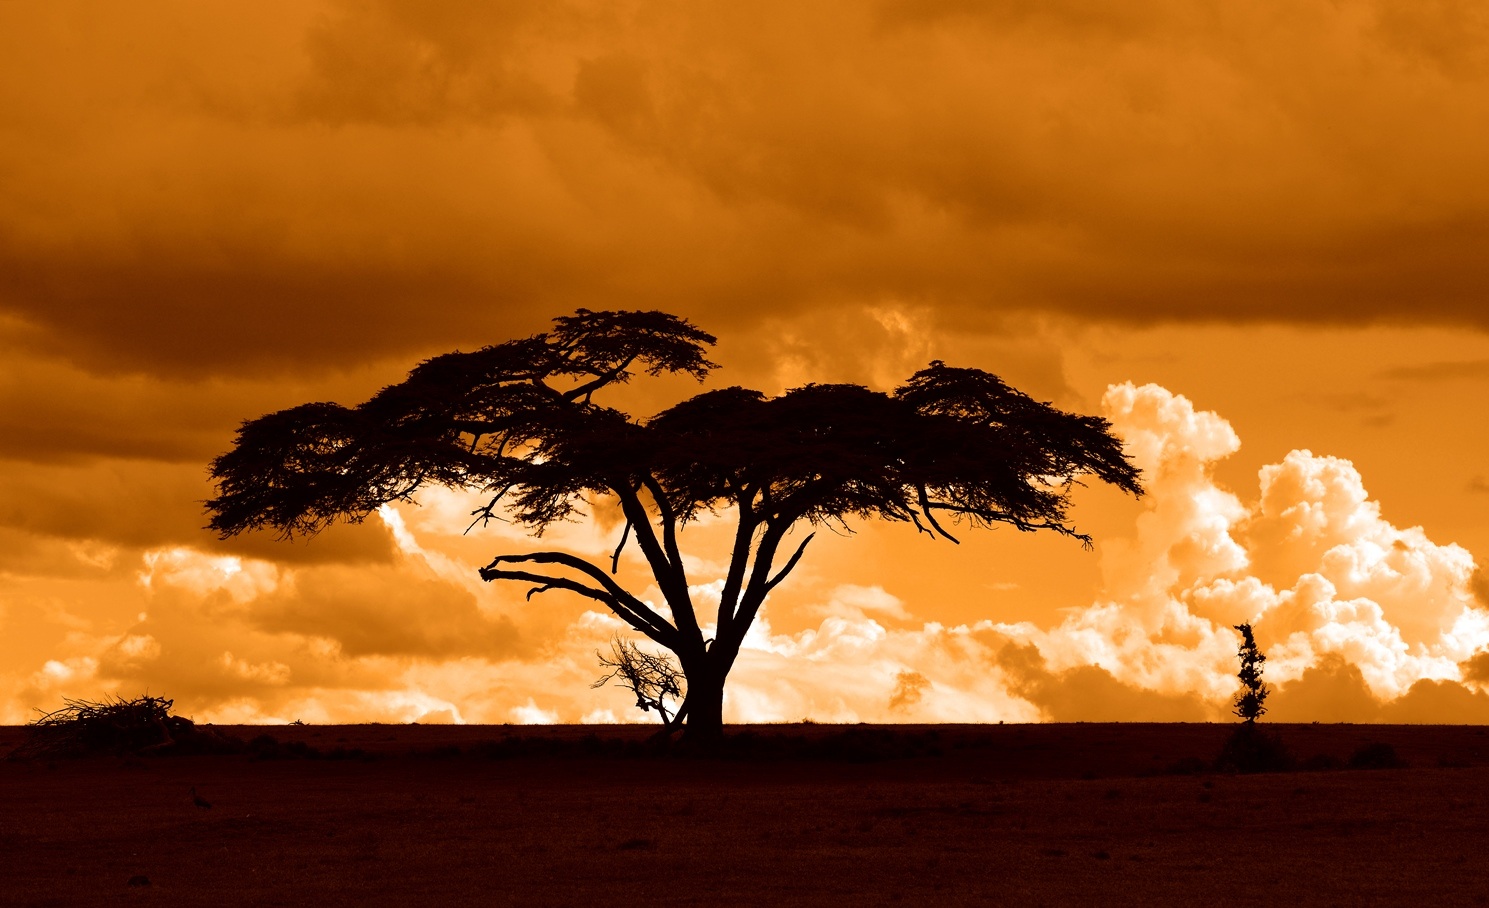 Sunset Sunday - Safari Sunsets in Kenya | Stay Adventurous | Mindset